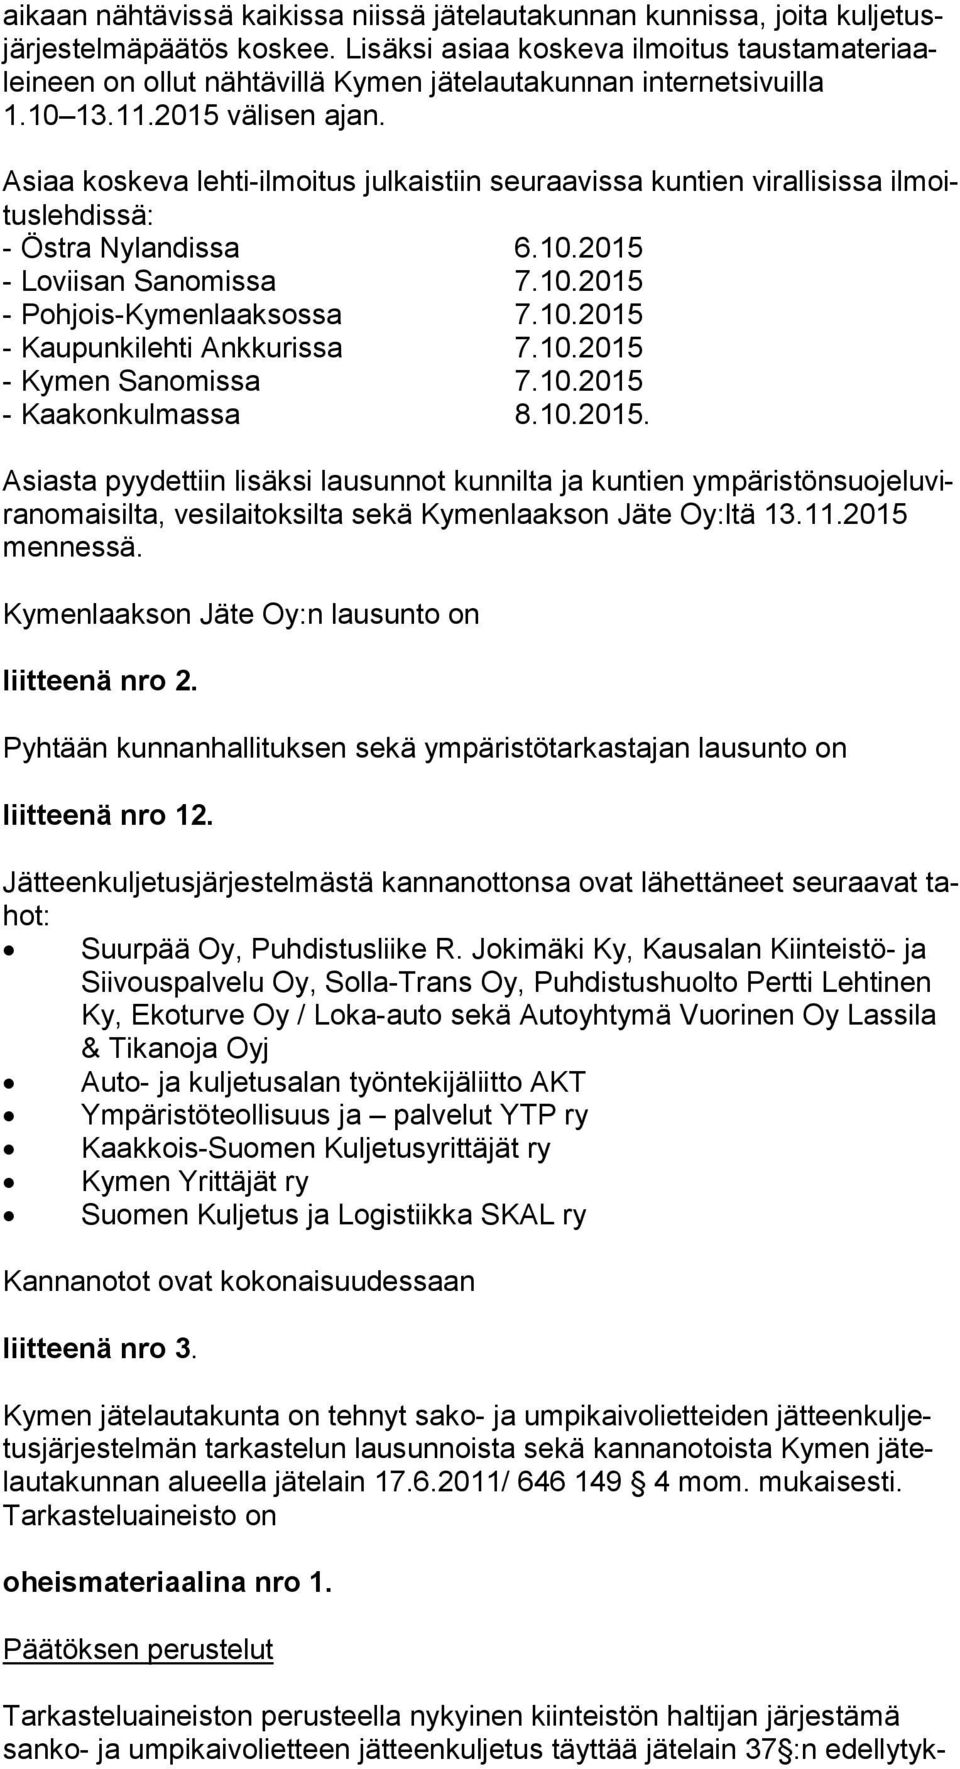 Asiaa koskeva lehti-ilmoitus julkaistiin seuraavissa kuntien virallisissa il moitus leh dis sä: - Östra Nylandissa 6.10.2015 - Loviisan Sanomissa 7.10.2015 - Pohjois-Kymenlaaksossa 7.10.2015 - Kaupunkilehti Ankkurissa 7.